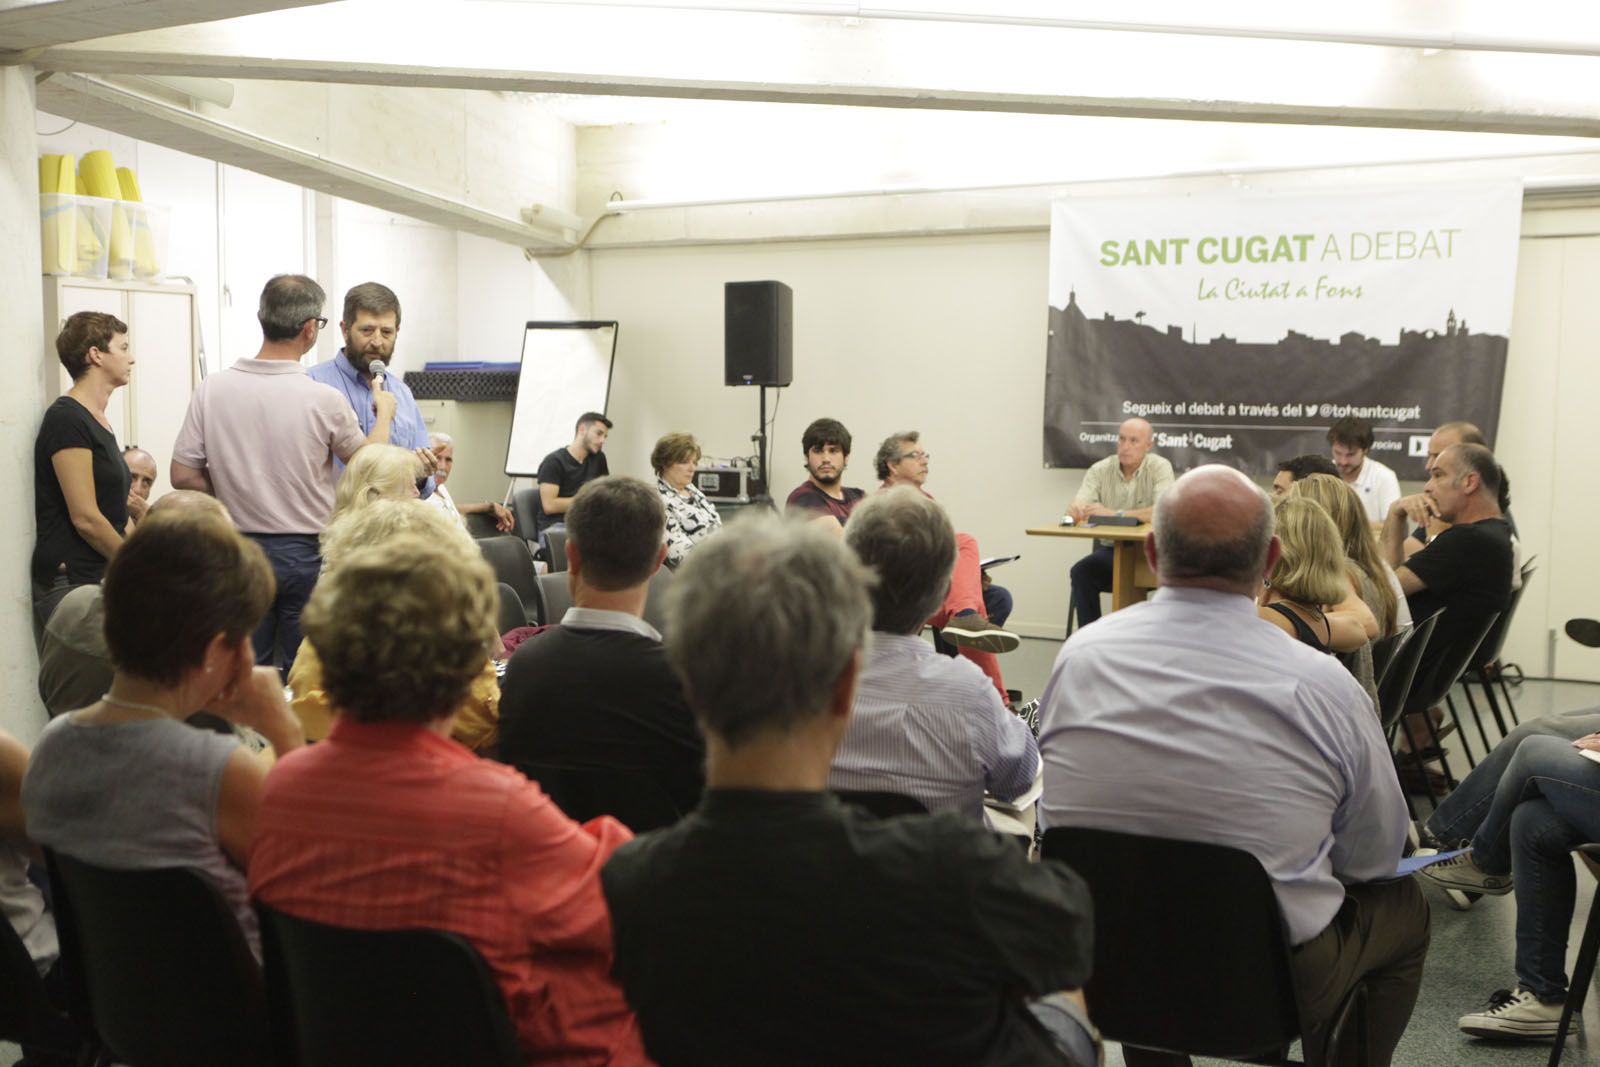 Es publicarà un reportatge en el TOT Sant Cugat en paper amb tot el que s'ha dit FOTO: Artur Ribera